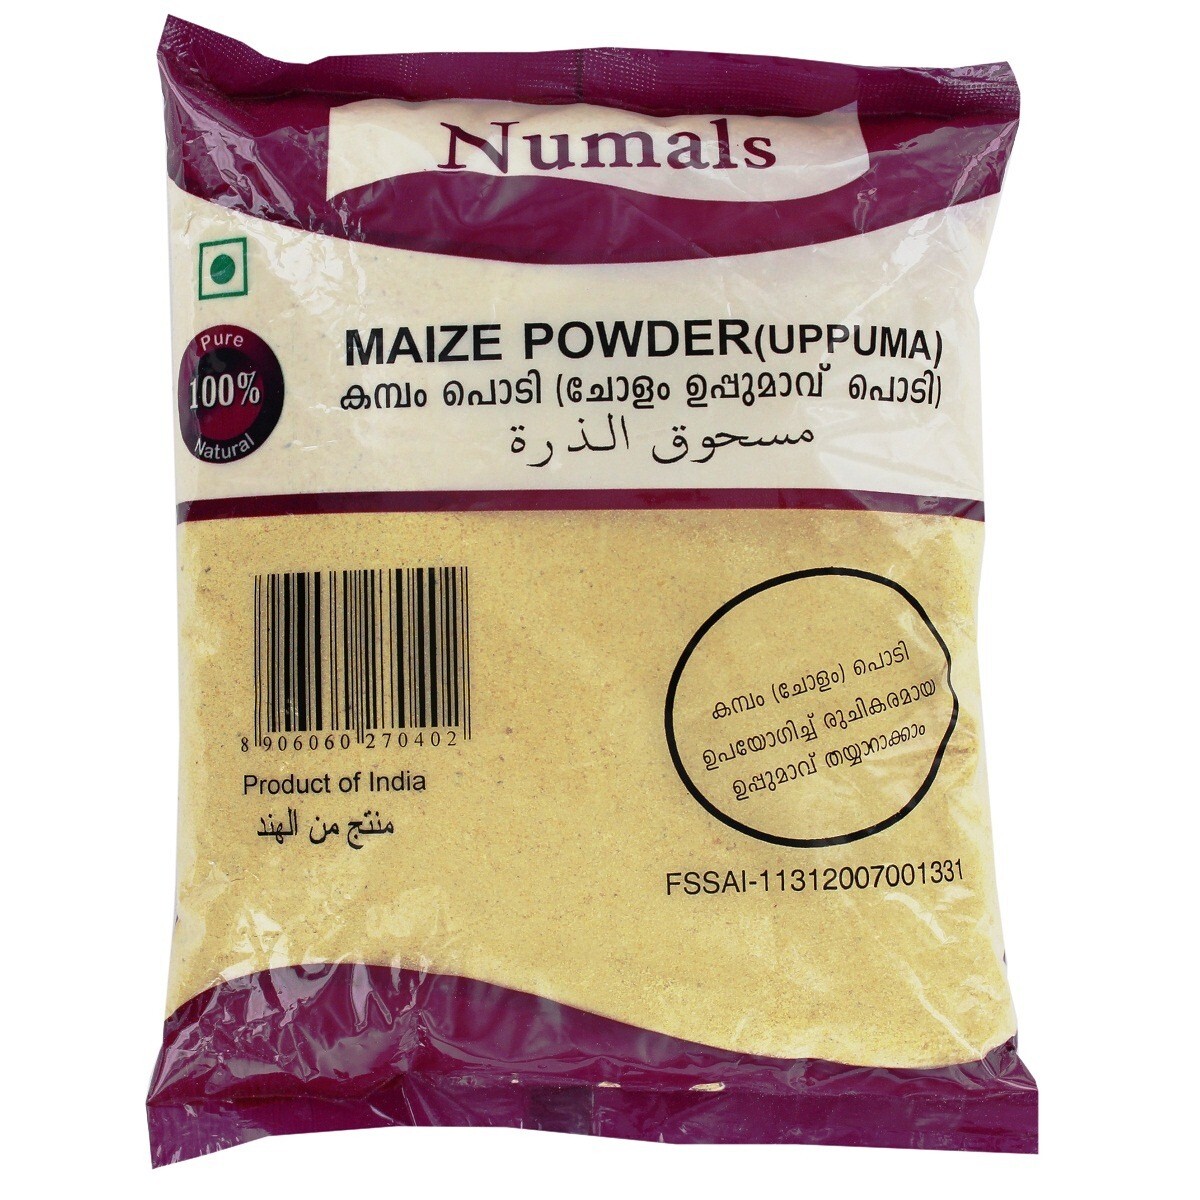 Numals Maize Powder 500g